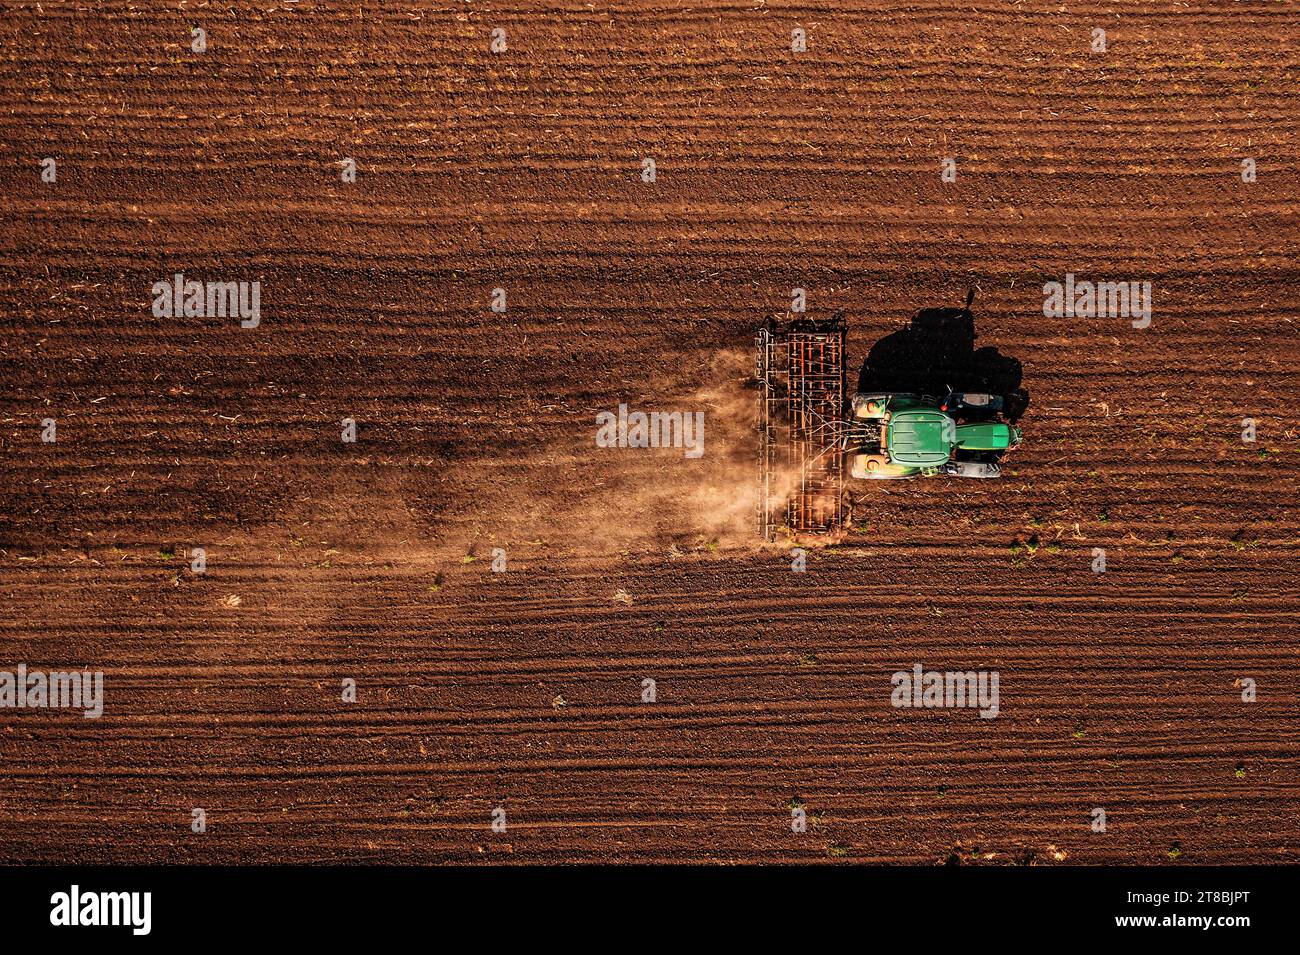 Traktor mit angebauter Deichsel, der vor der Aussaat die Bodenbearbeitung durchführt, Luftaufnahme vom pov der Drohne nach unten Stockfoto